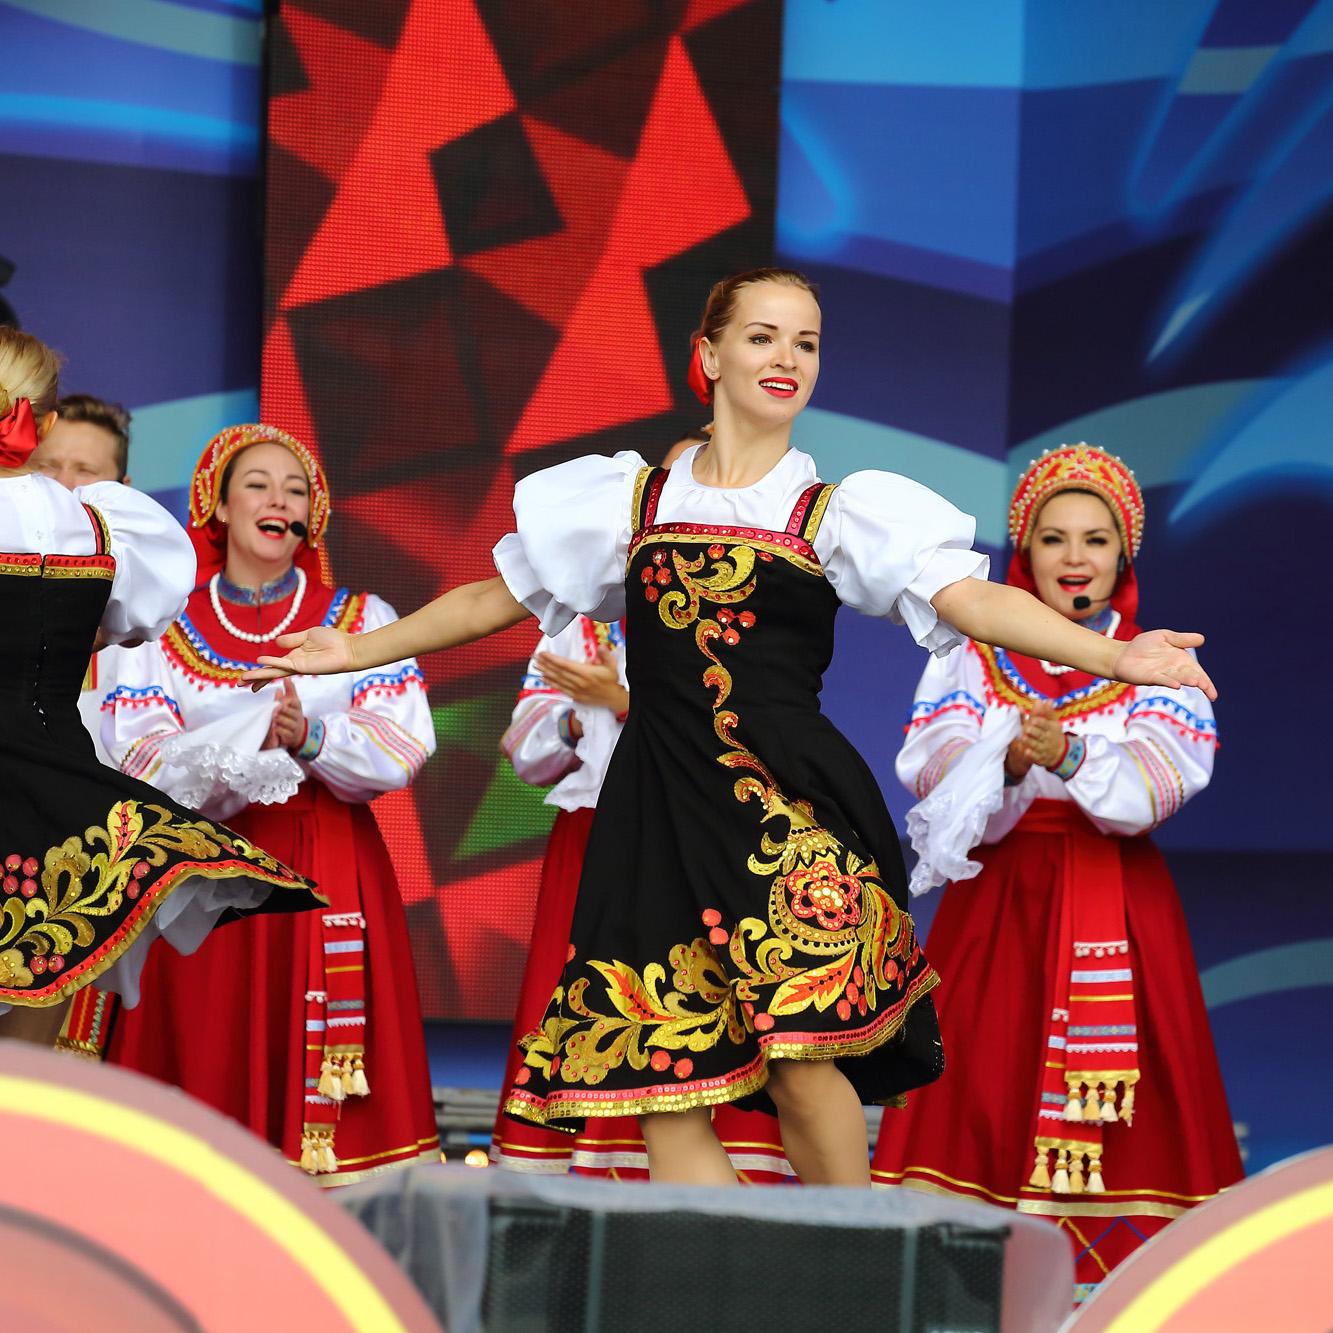 Четыре сцены и восемь тематических площадок ждут гостей фестиваля «Русское поле» в Коломенском